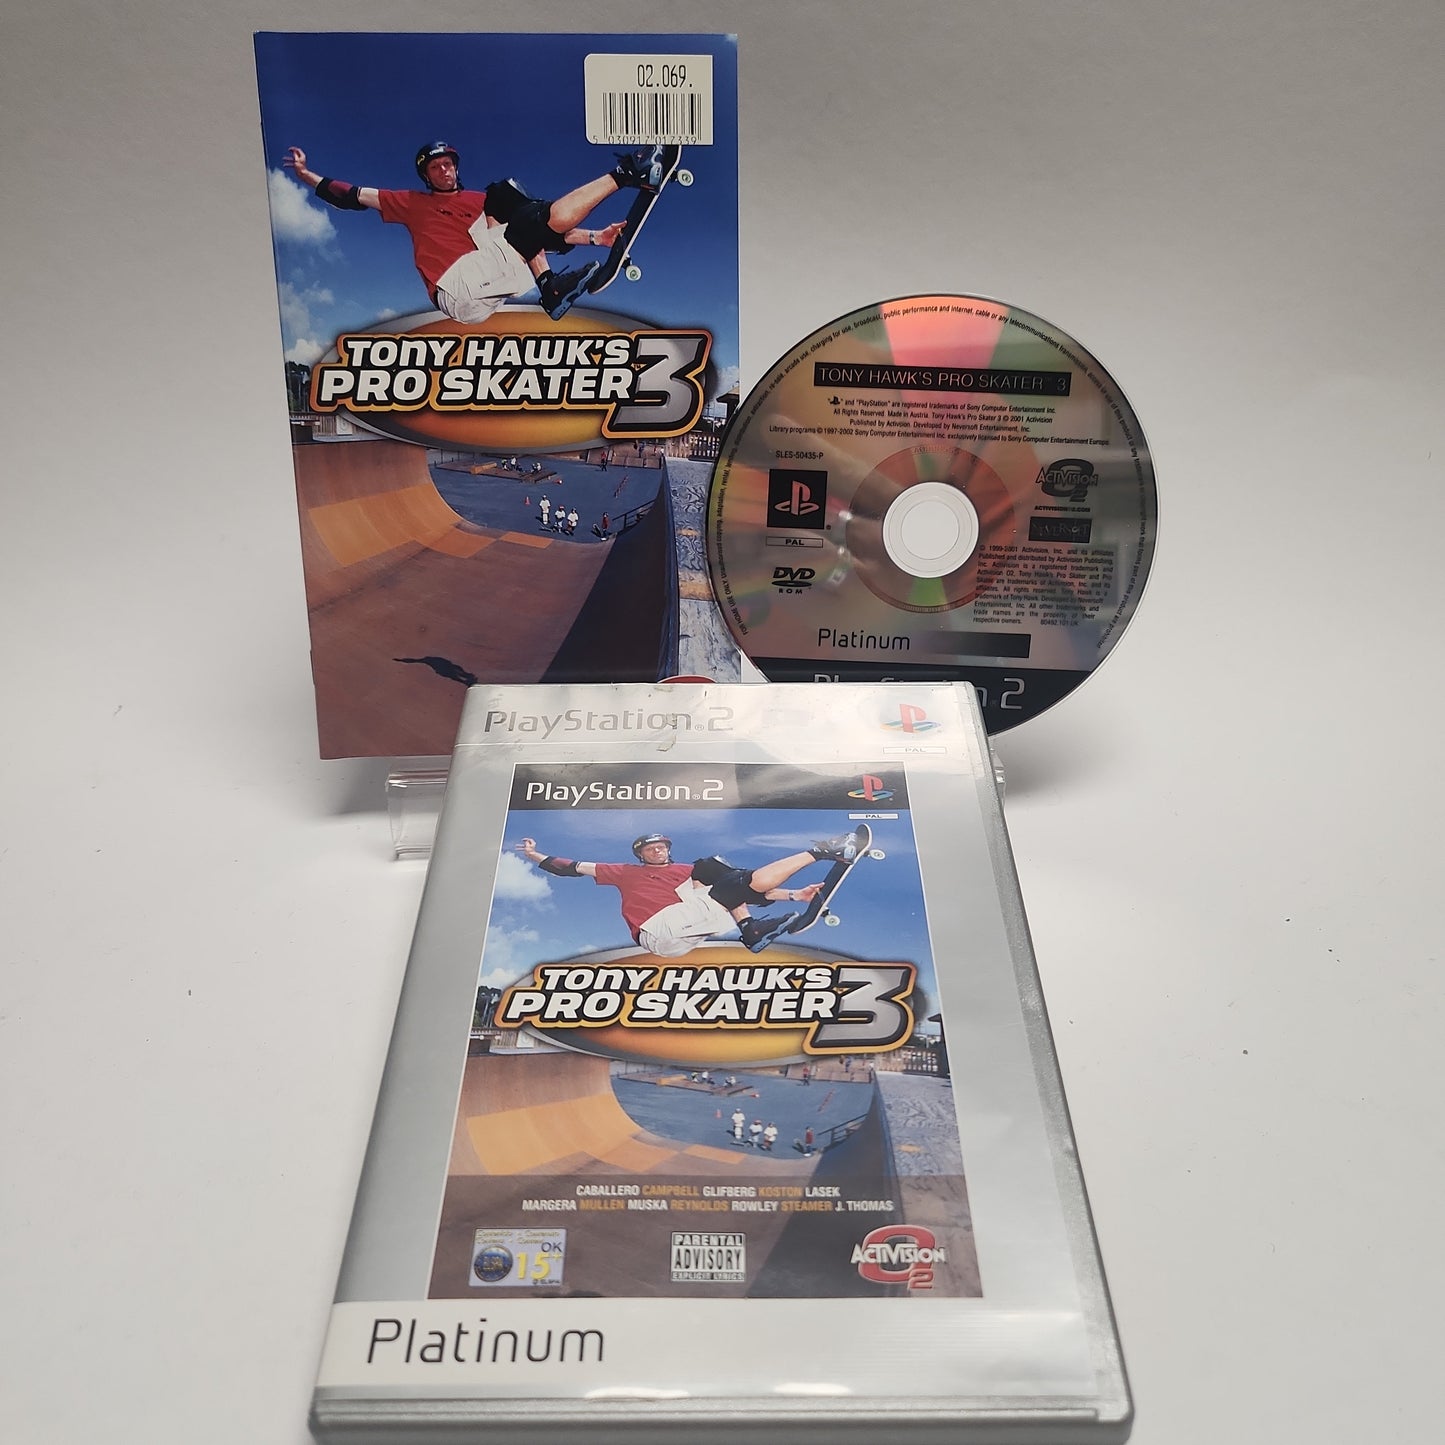 Tony Hawk's Pro Skater 3 Platinum Edition Playstation 2